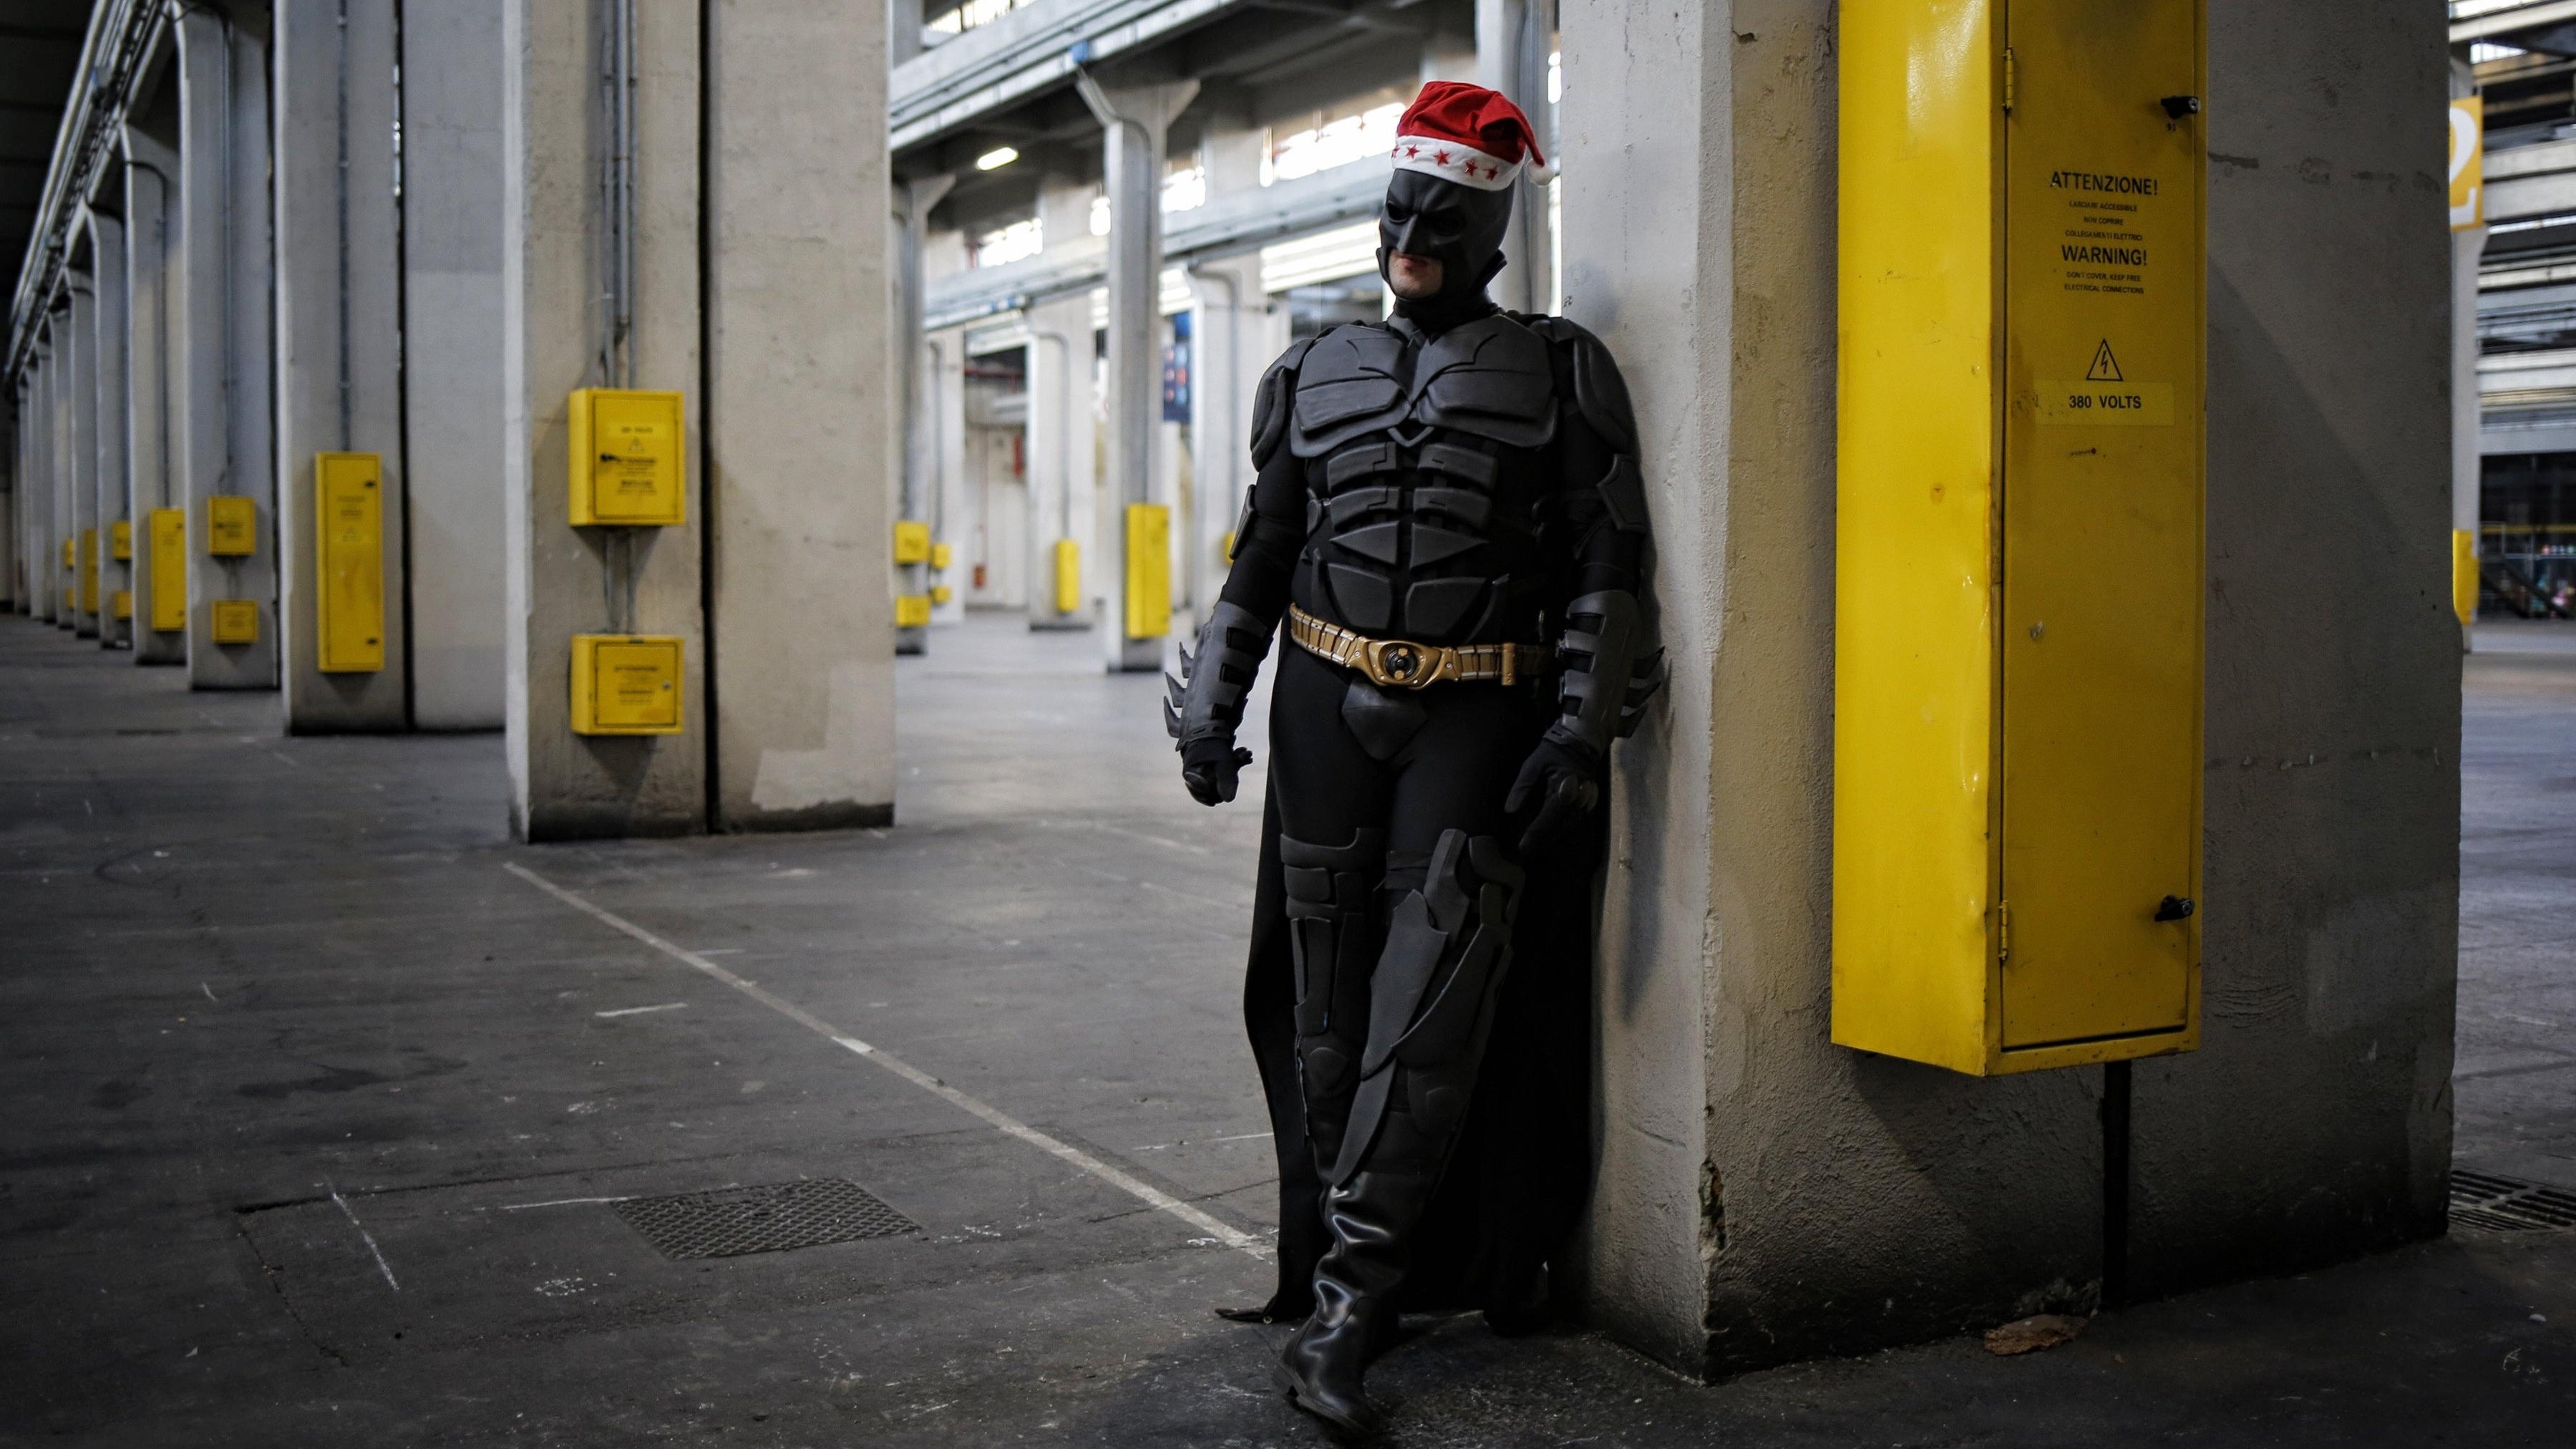 Michael Keaton adds Batgirl movie to Batman nostalgia tour, probably